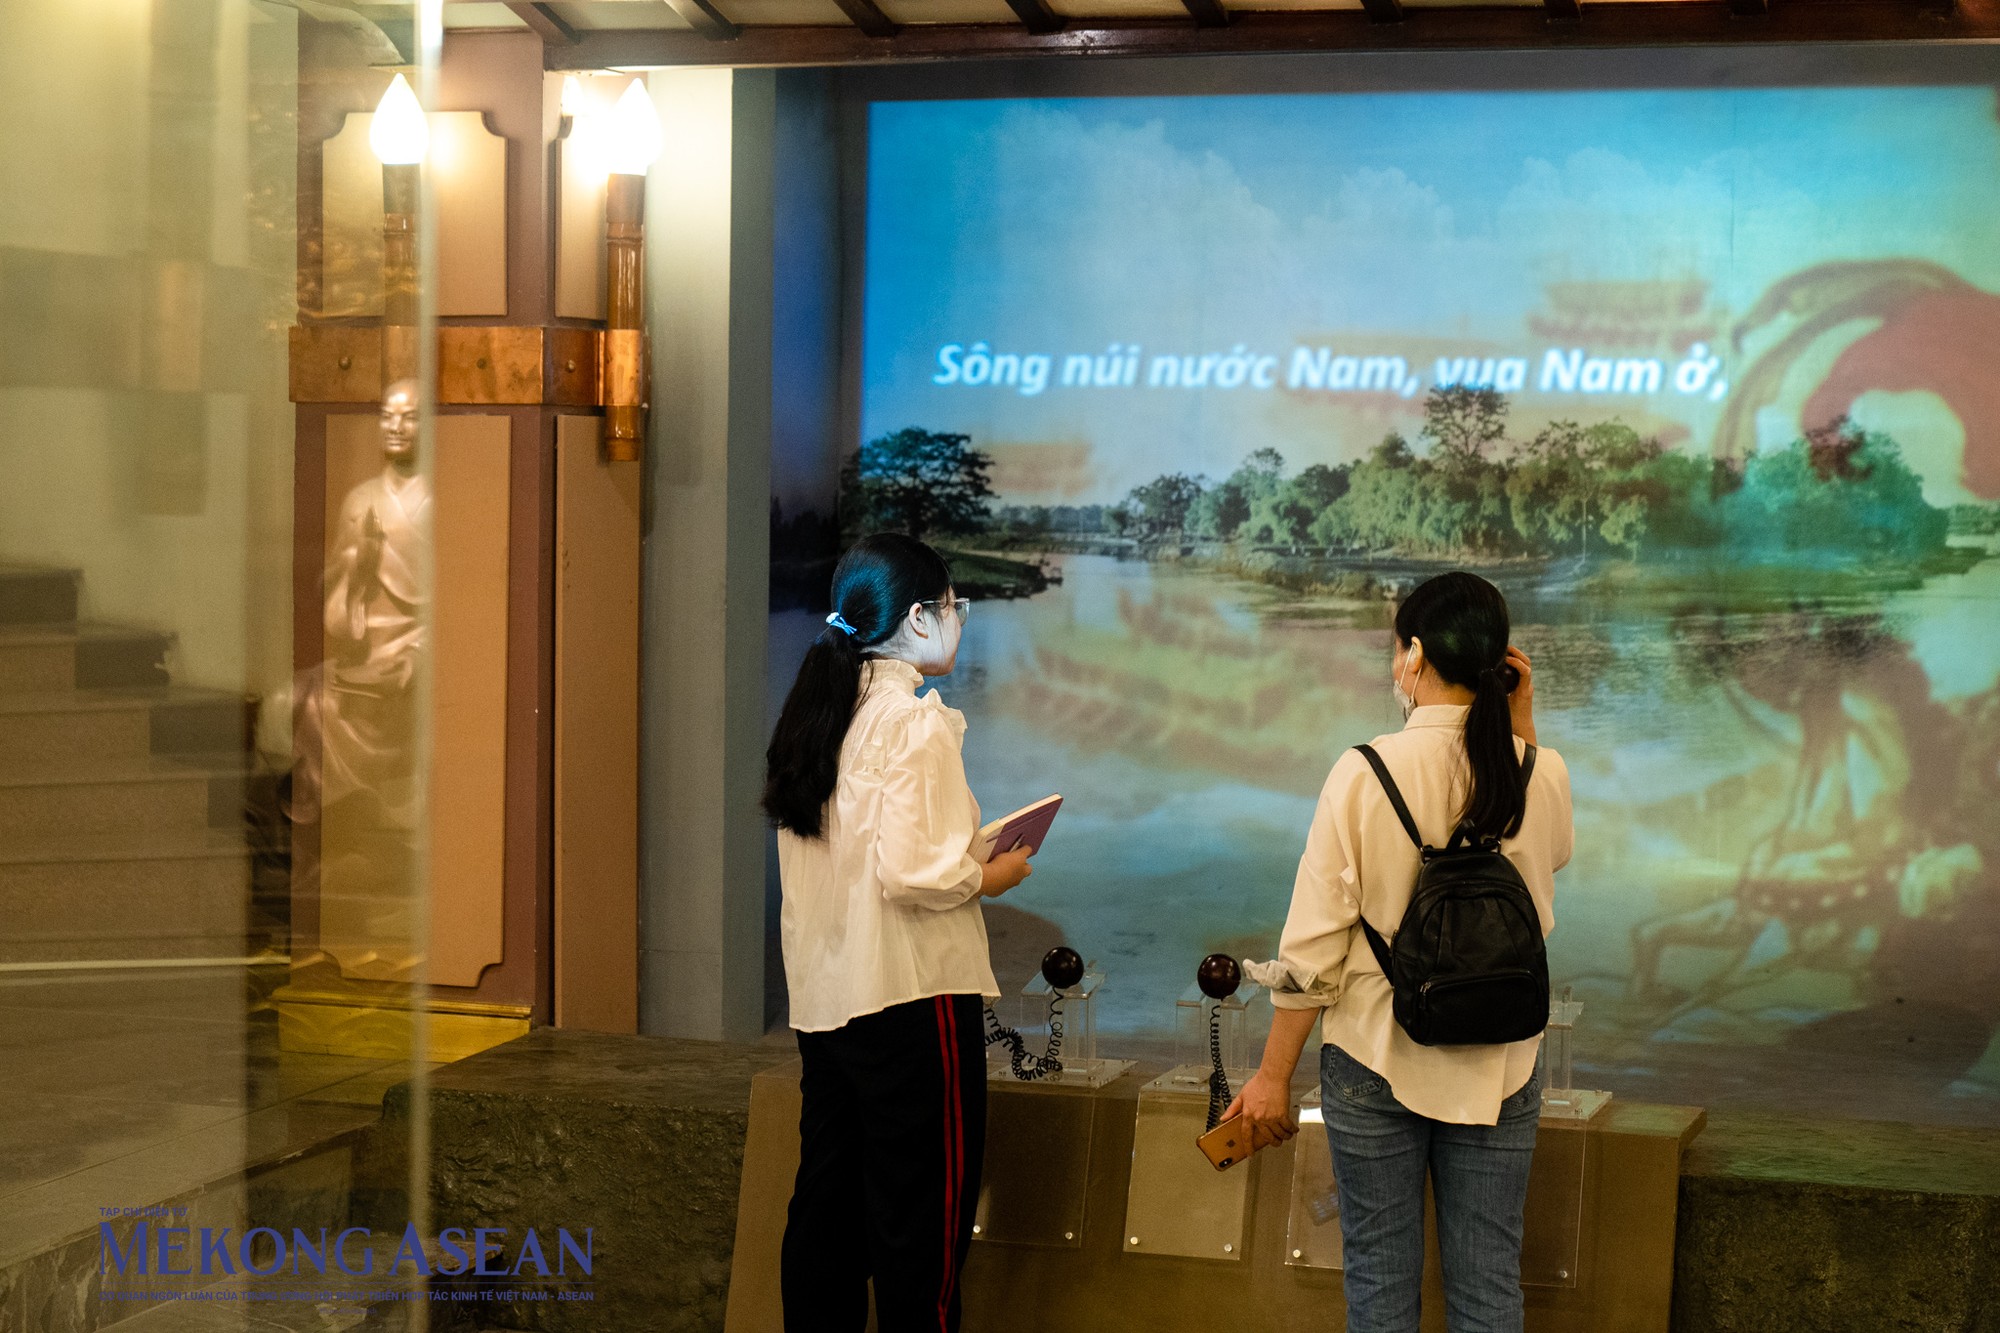 Không chỉ trưng bày các hiện vật quý, bảo tàng còn bố trí hệ thống máy tính, màn hình cảm ứng tự động, giới thiệu về các hiện vật khi khách tham quan bước vào bảo tàng như những thước phim giới thiệu nền văn học từ thời xa xưa .